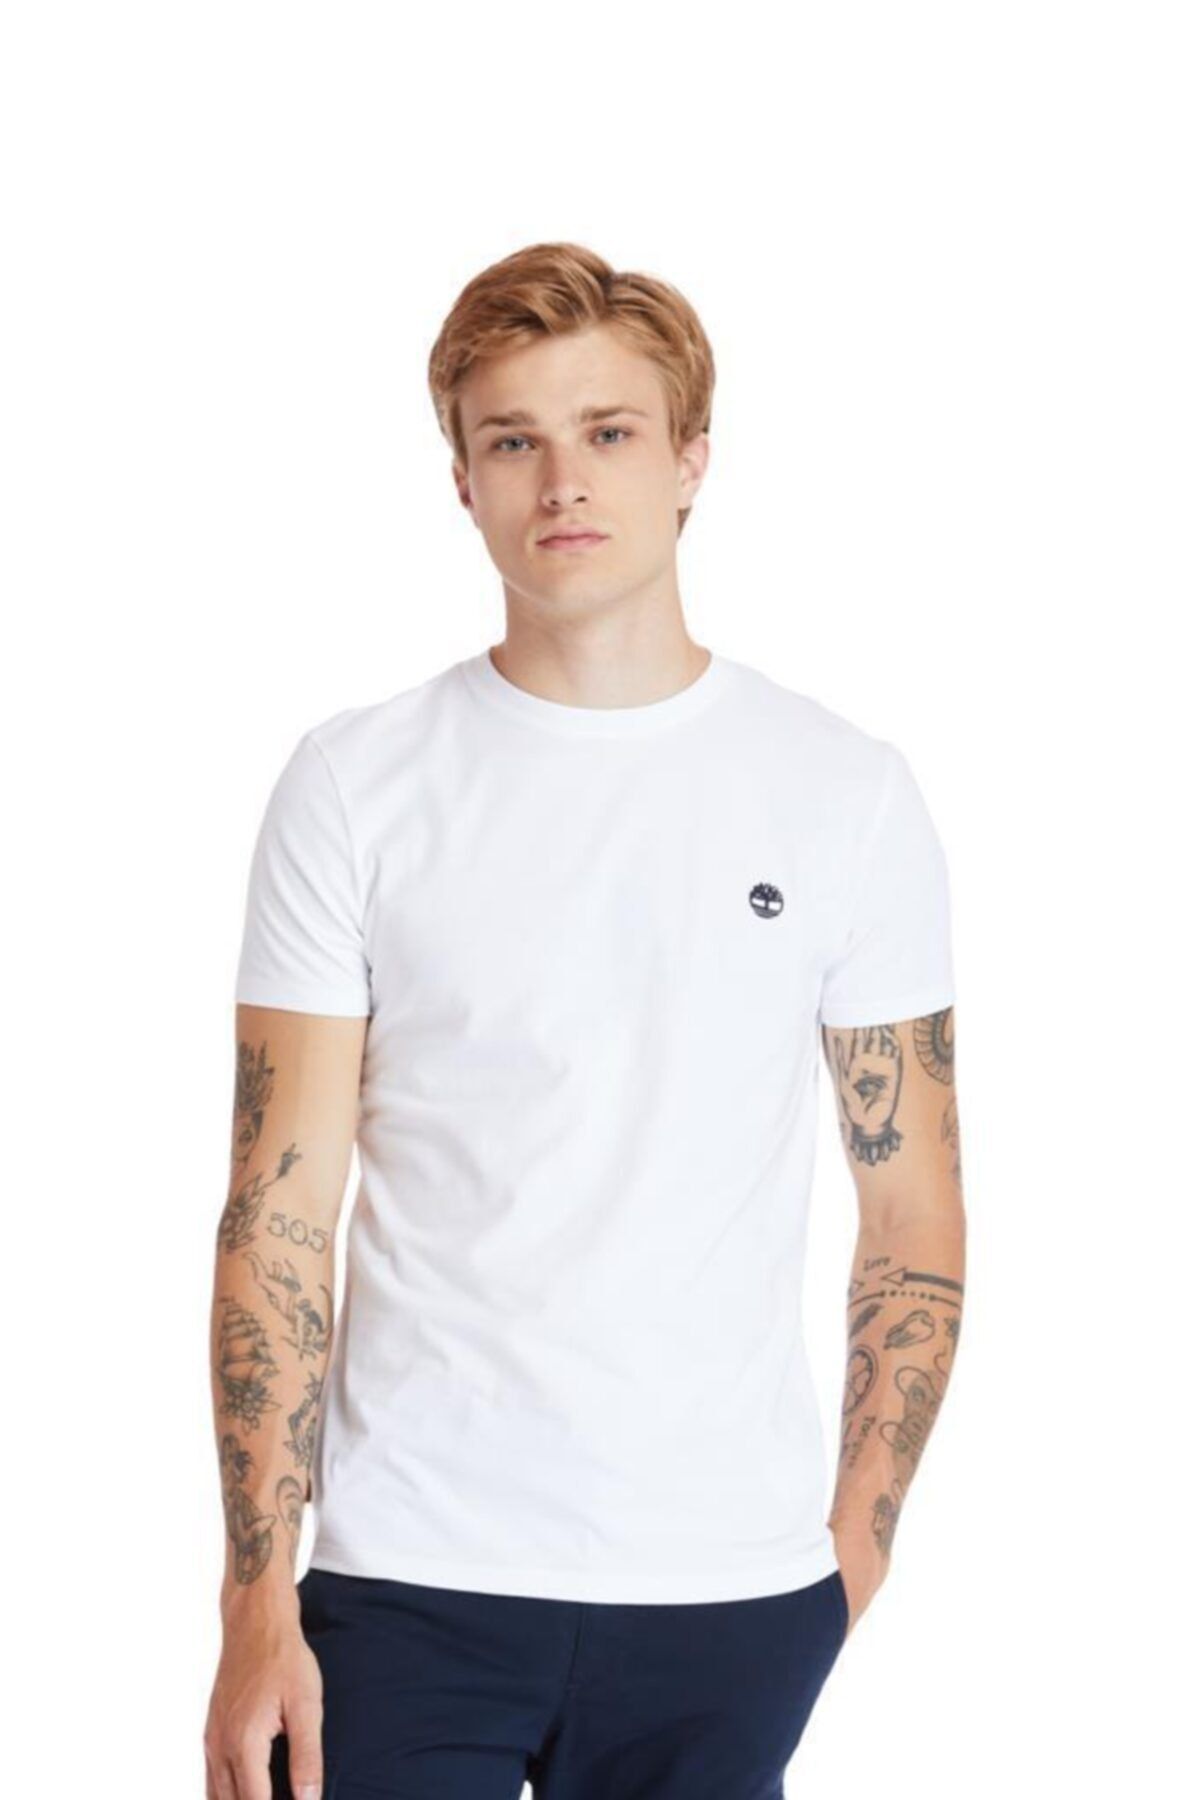 Timberland SS DUNSTAN RIVER JERSEY C Beyaz Erkek T-Shirt 101096706